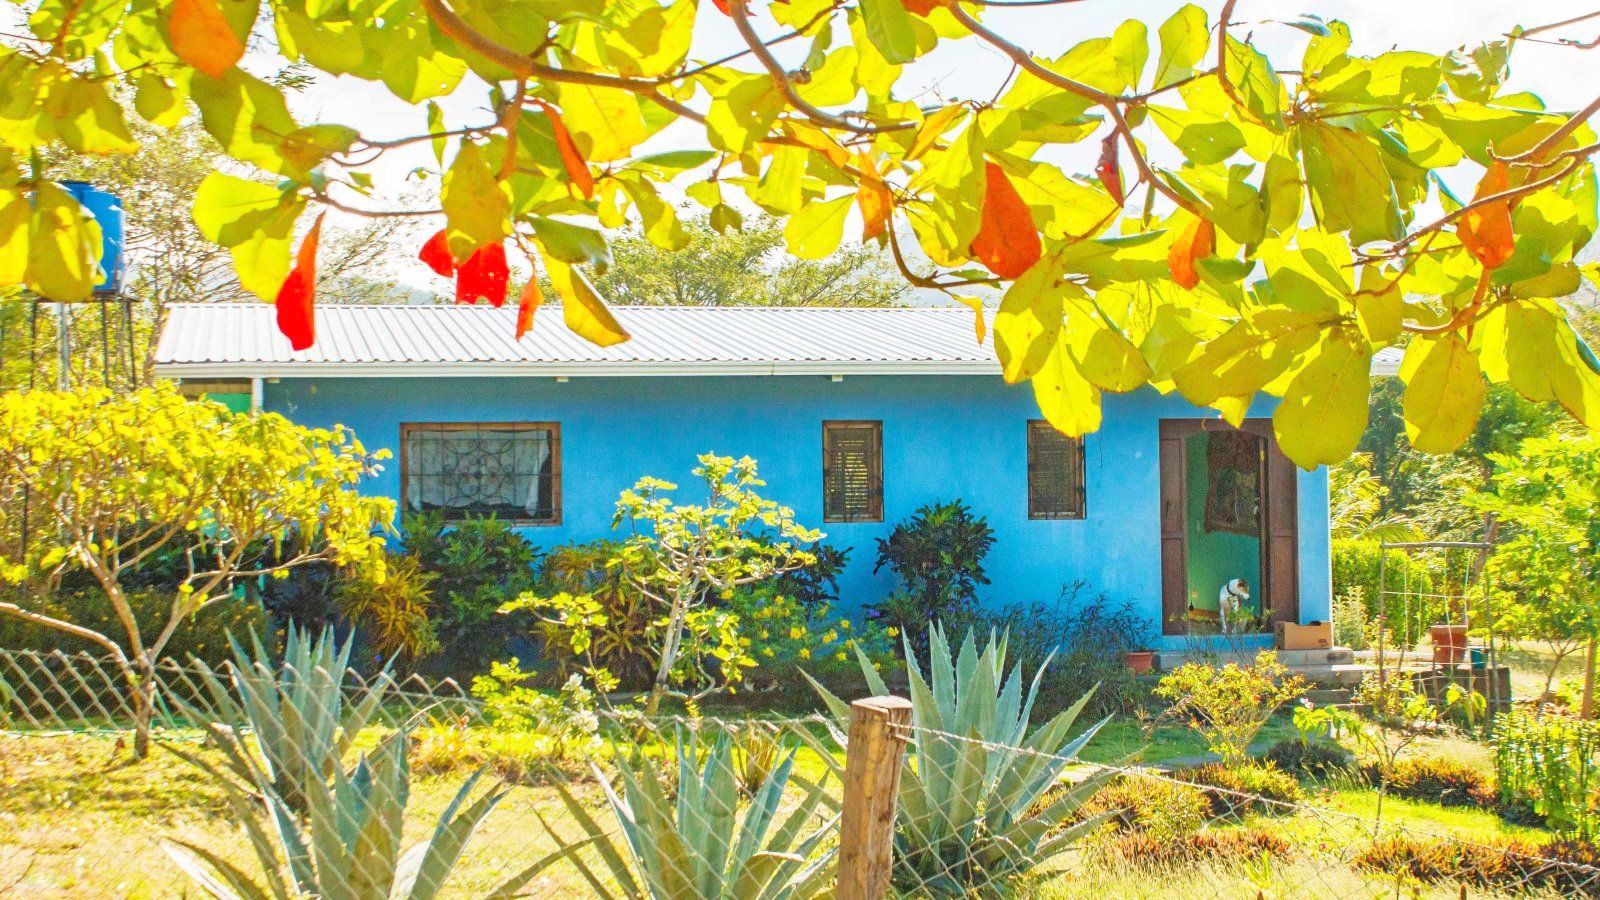 Acreage San Juan Del Sur Property For Sale Nicaragua 117.jpg